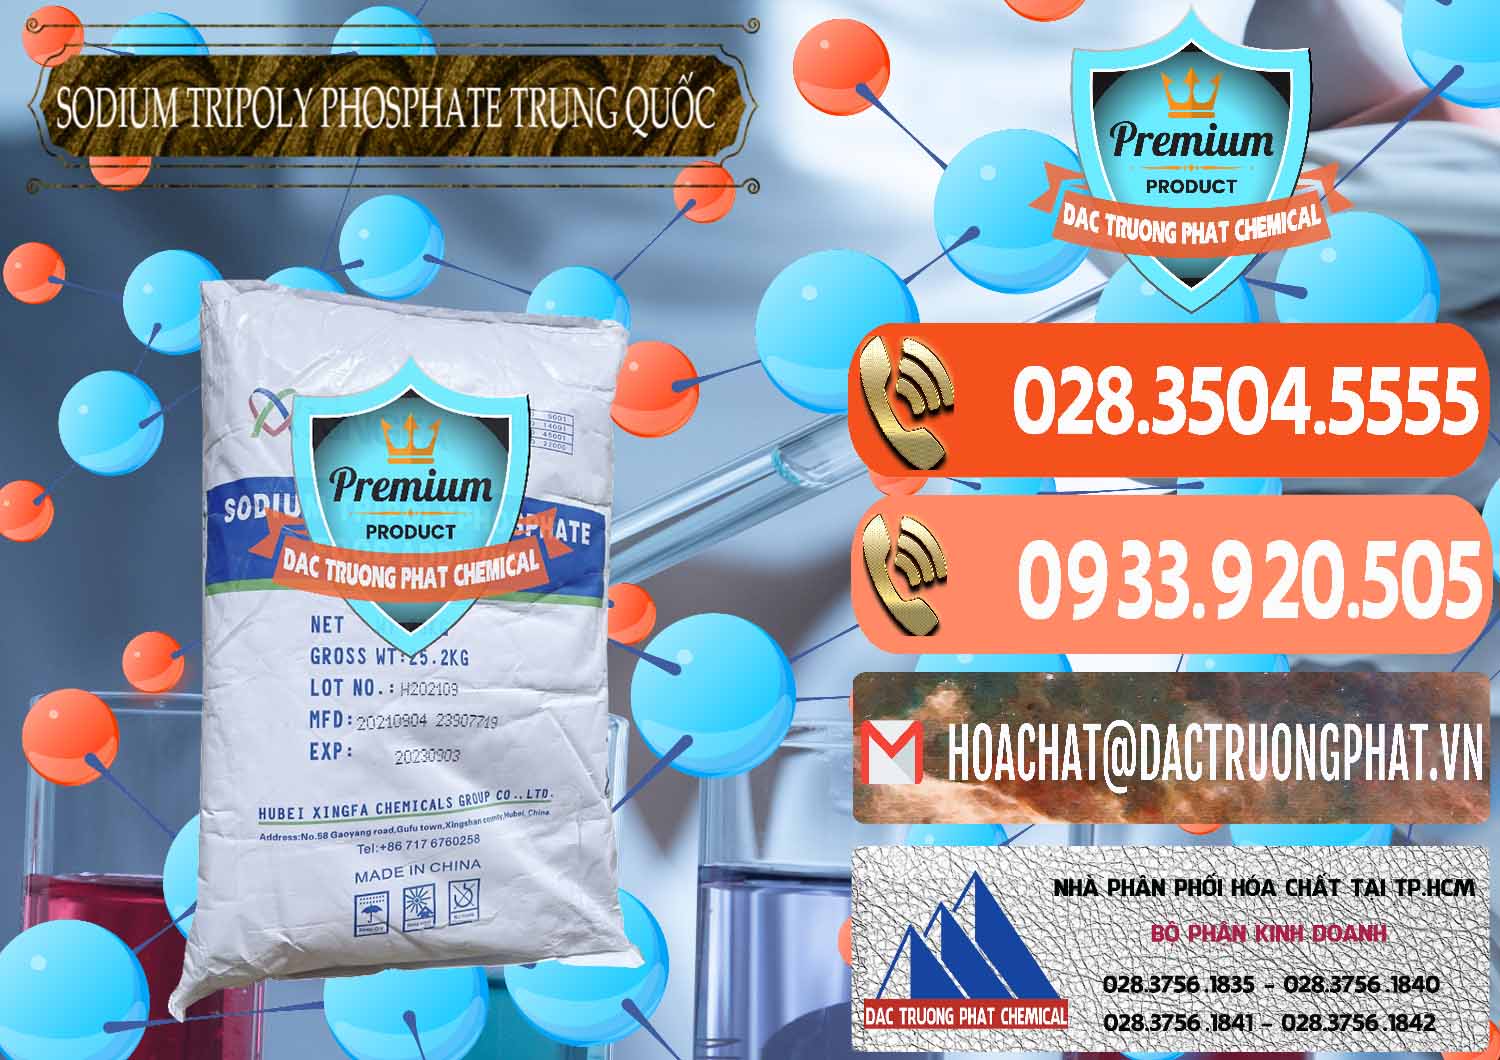 Nơi chuyên cung cấp & bán Sodium Tripoly Phosphate - STPP 96% Xingfa Trung Quốc China - 0433 - Chuyên bán - phân phối hóa chất tại TP.HCM - hoachatmientay.com